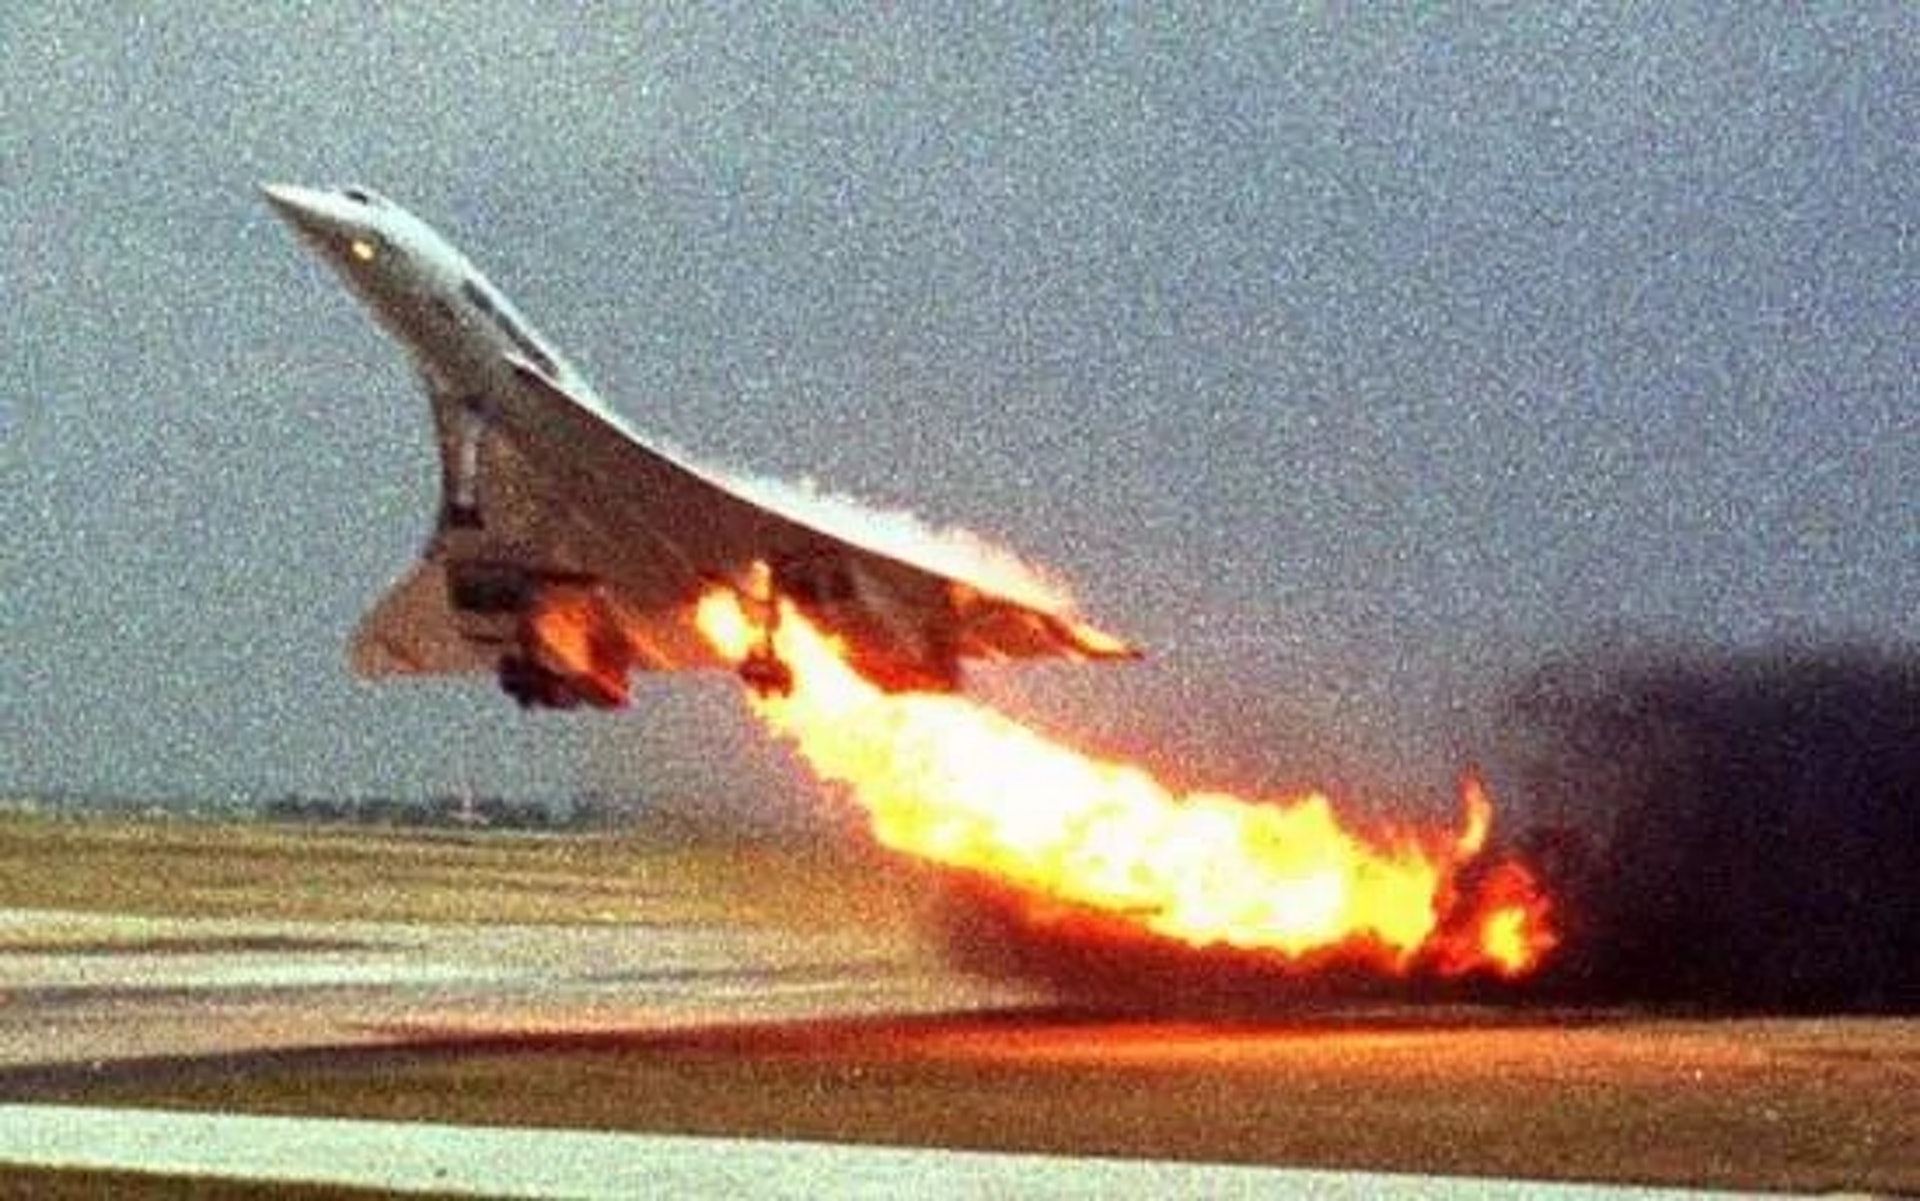 2000年7月，一架協和式客機在巴黎戴高樂機場起飛時著火，兩分鐘後墜毀，空難共造成113人遇難。  協和式雖然是一個偉大的設計，但因為2000年在法國發生了墜毀，導致超音速飛機的安全被大家質疑，加上飛行時本身噪聲大、機艙牆面會發熱，在2003年就不再有航空公司運營它了。（一条授權使用）